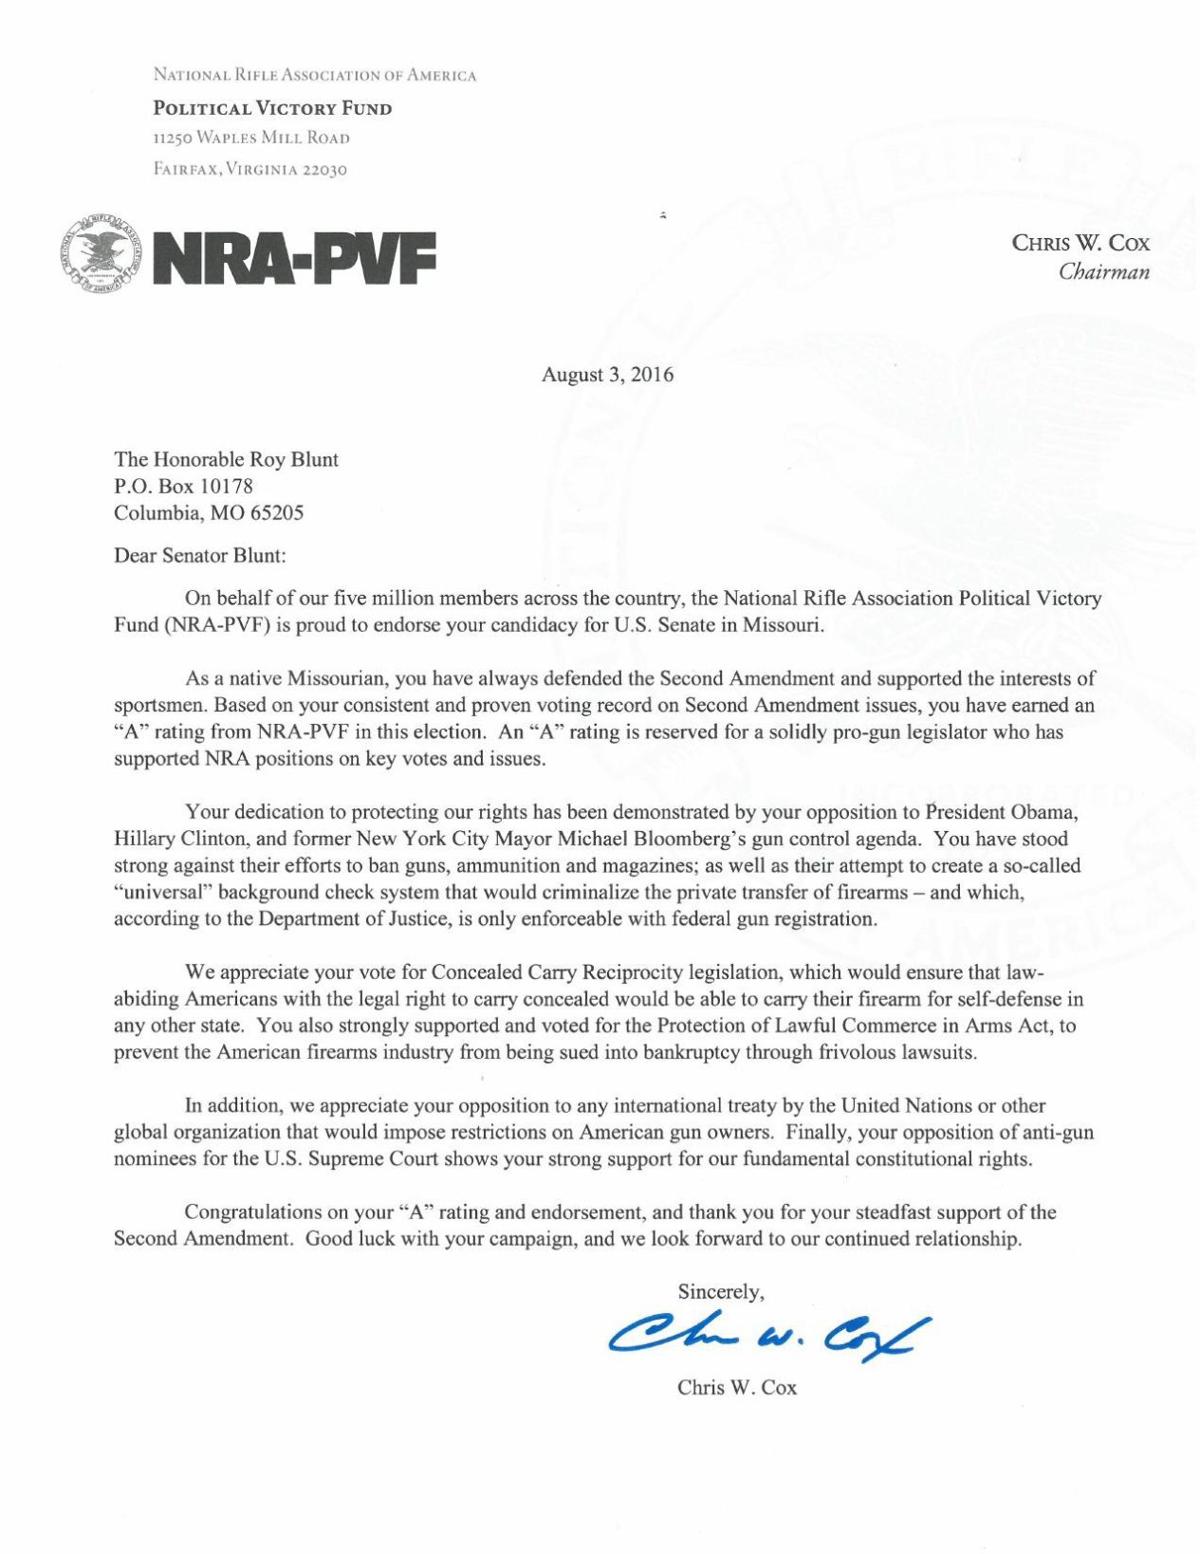 NRA letter endorsing Roy Blunt for Senate re-election | | comicsahoy.com